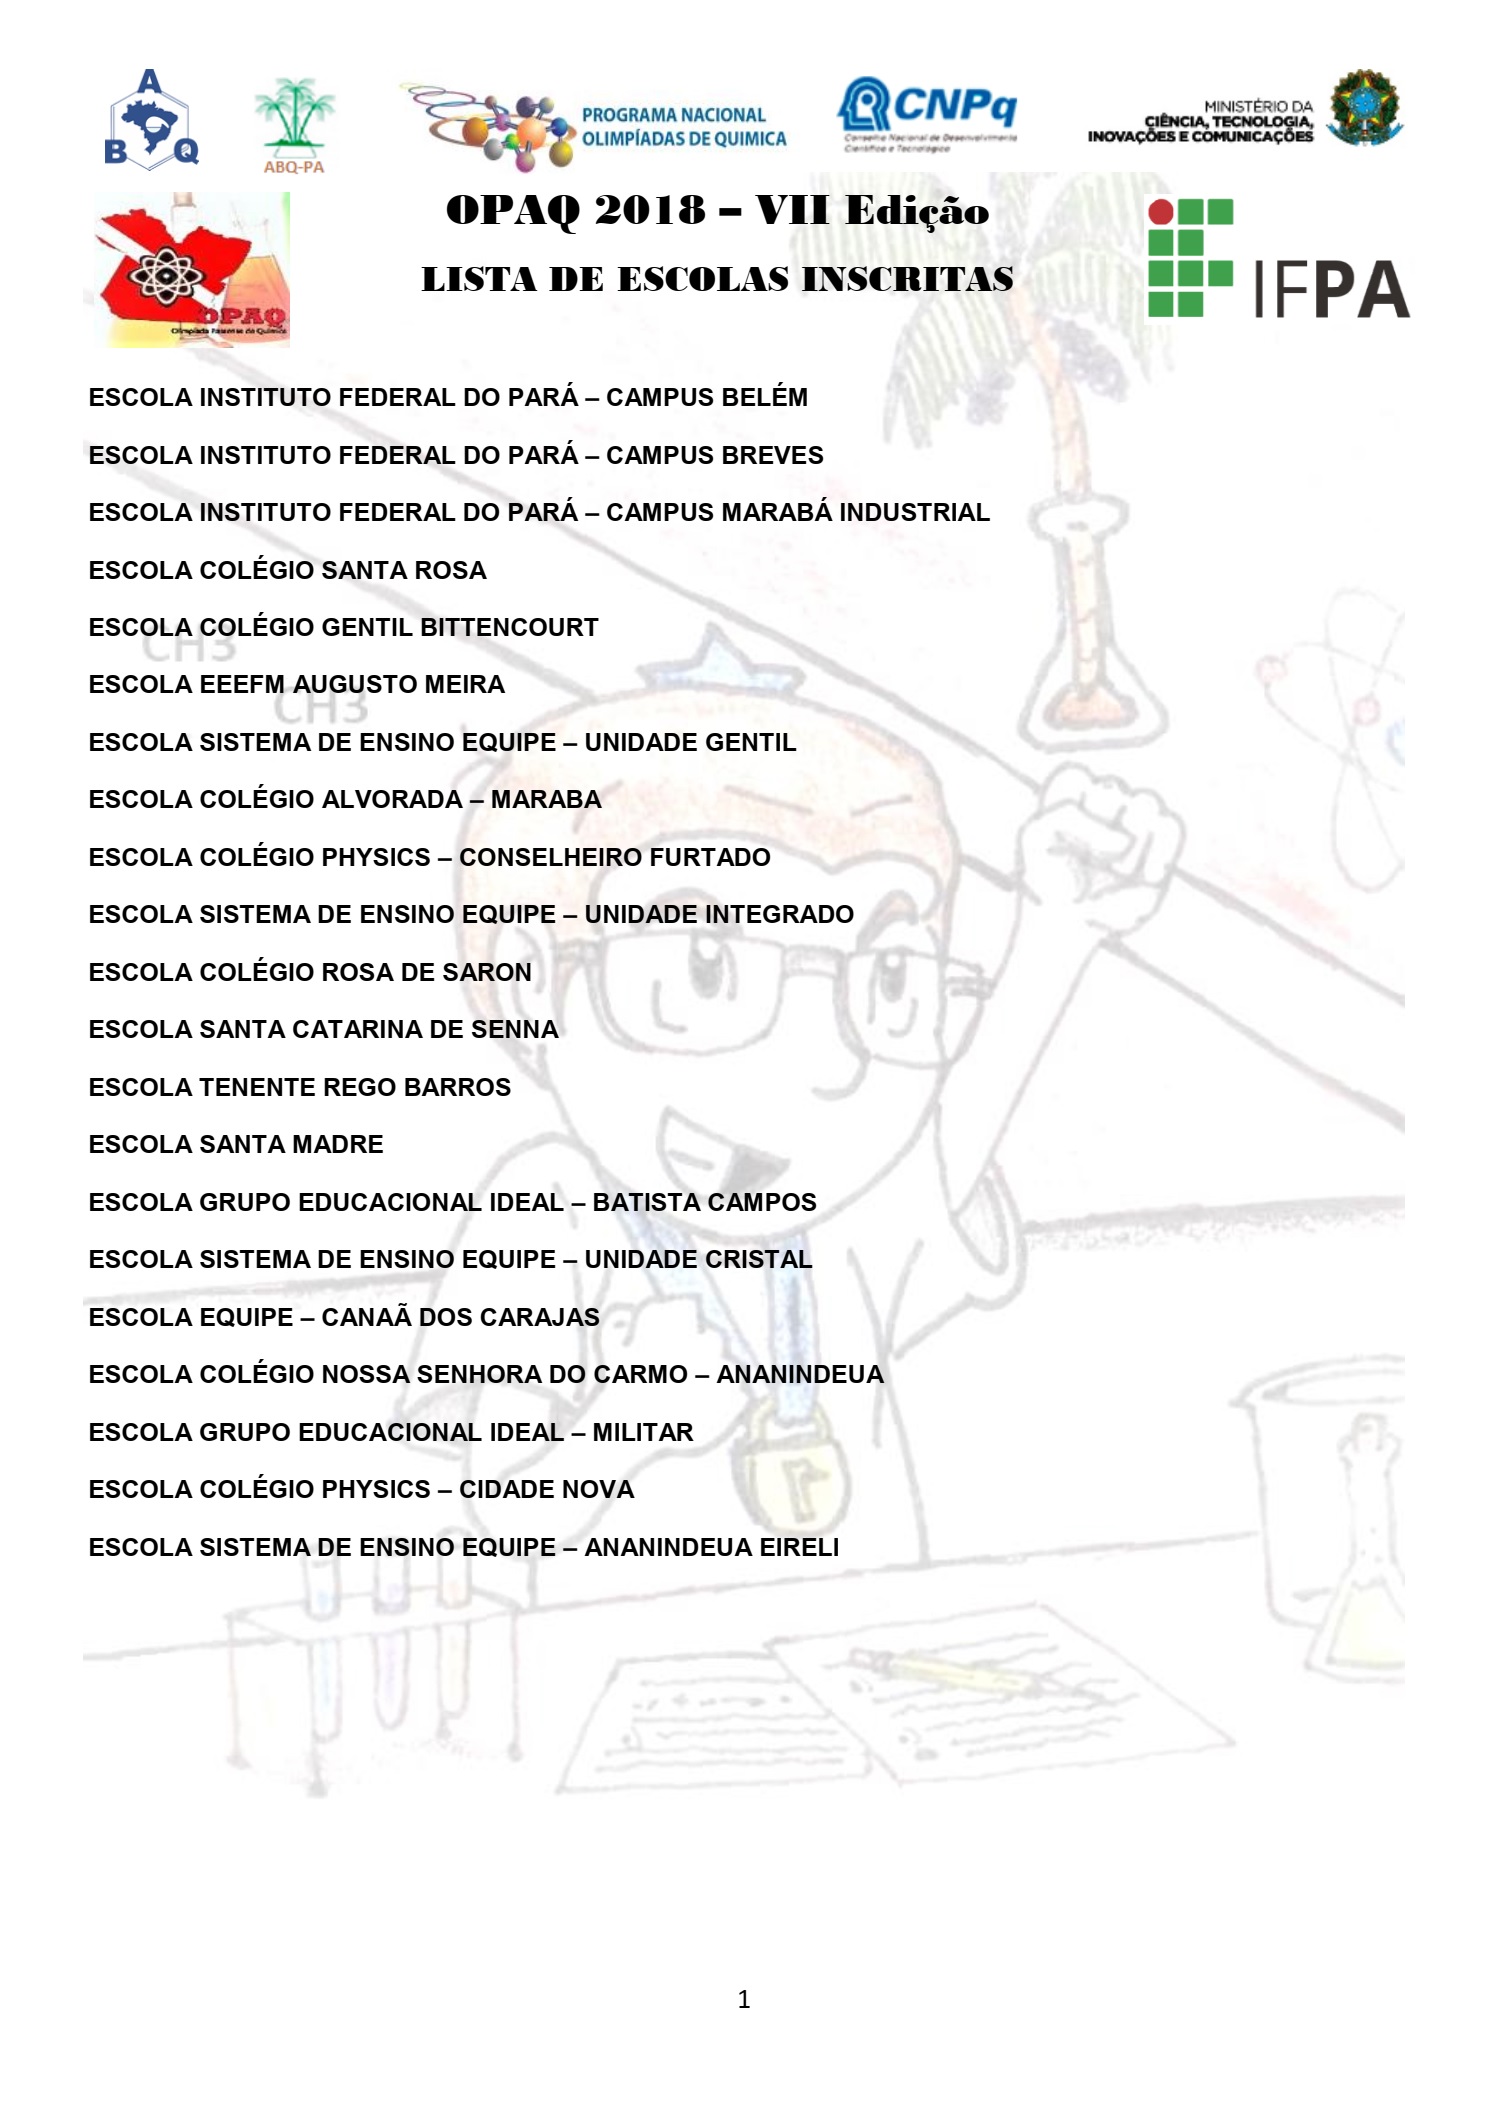 Lista de Escolas Inscritas na OPAQ 2018